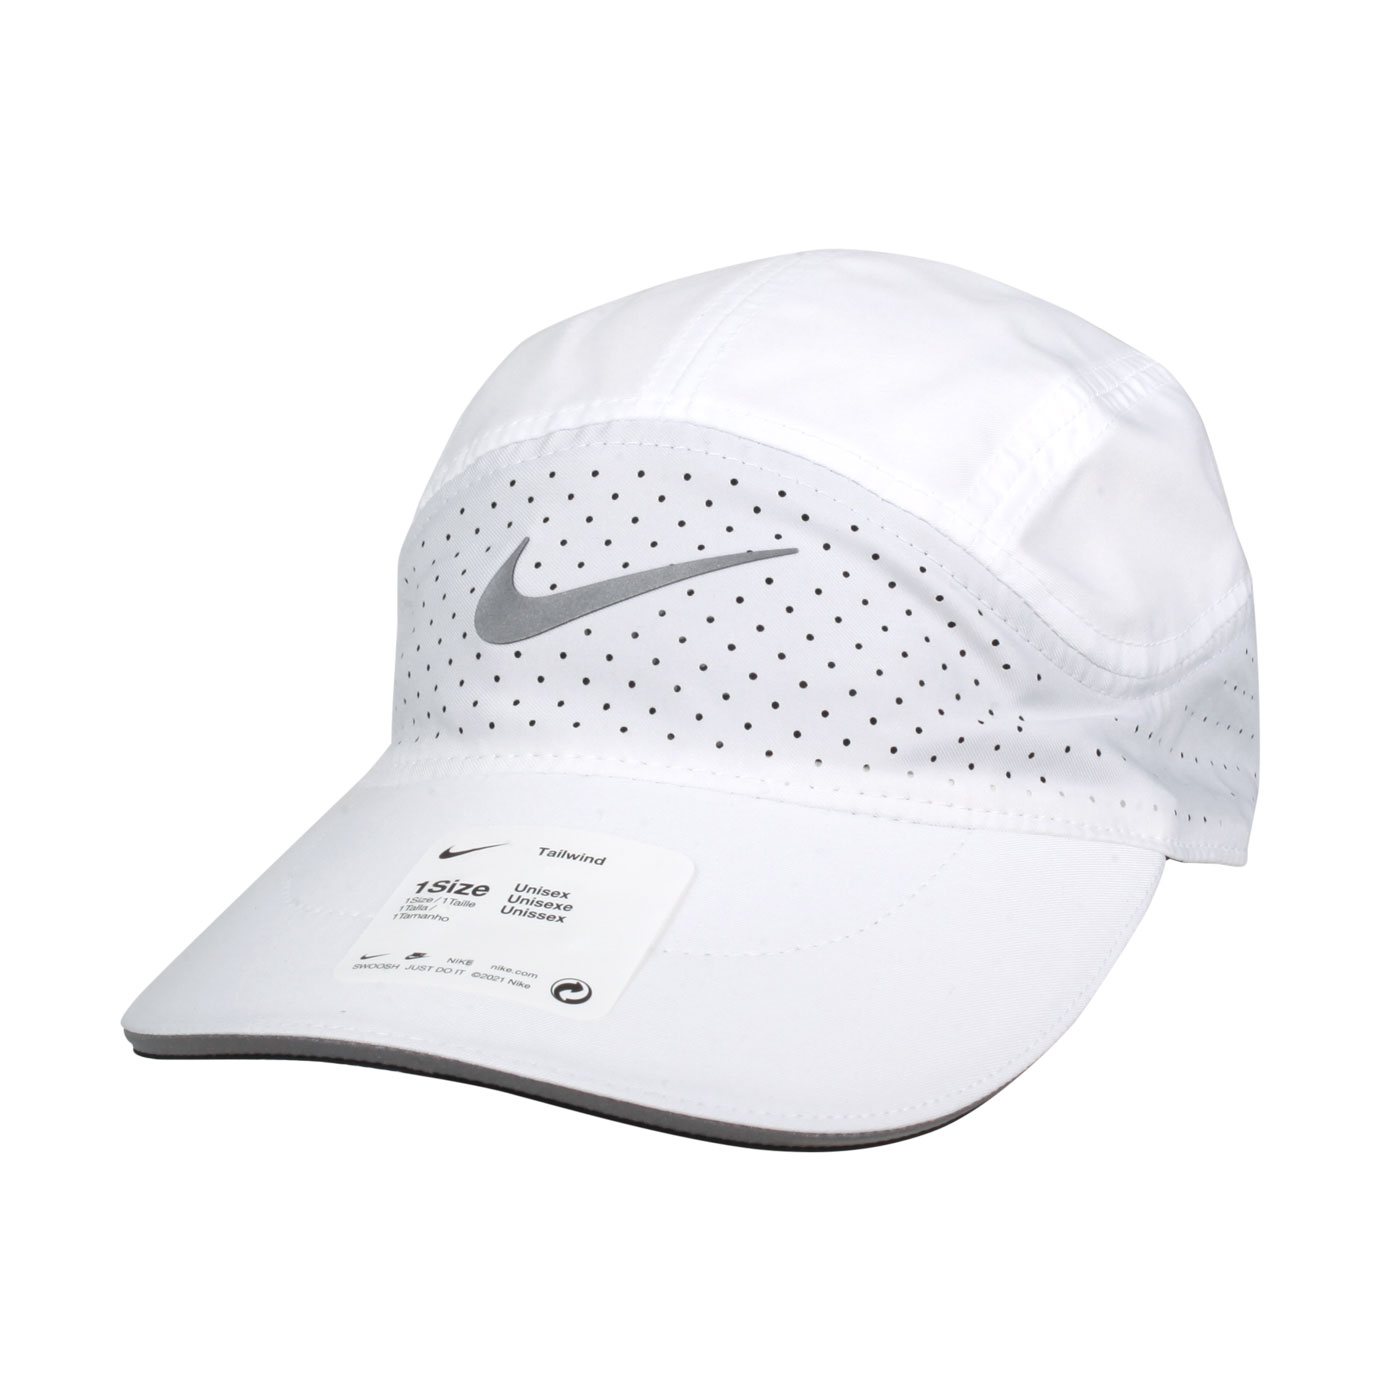 NIKE 運動帽 BV2204-100 - 白銀